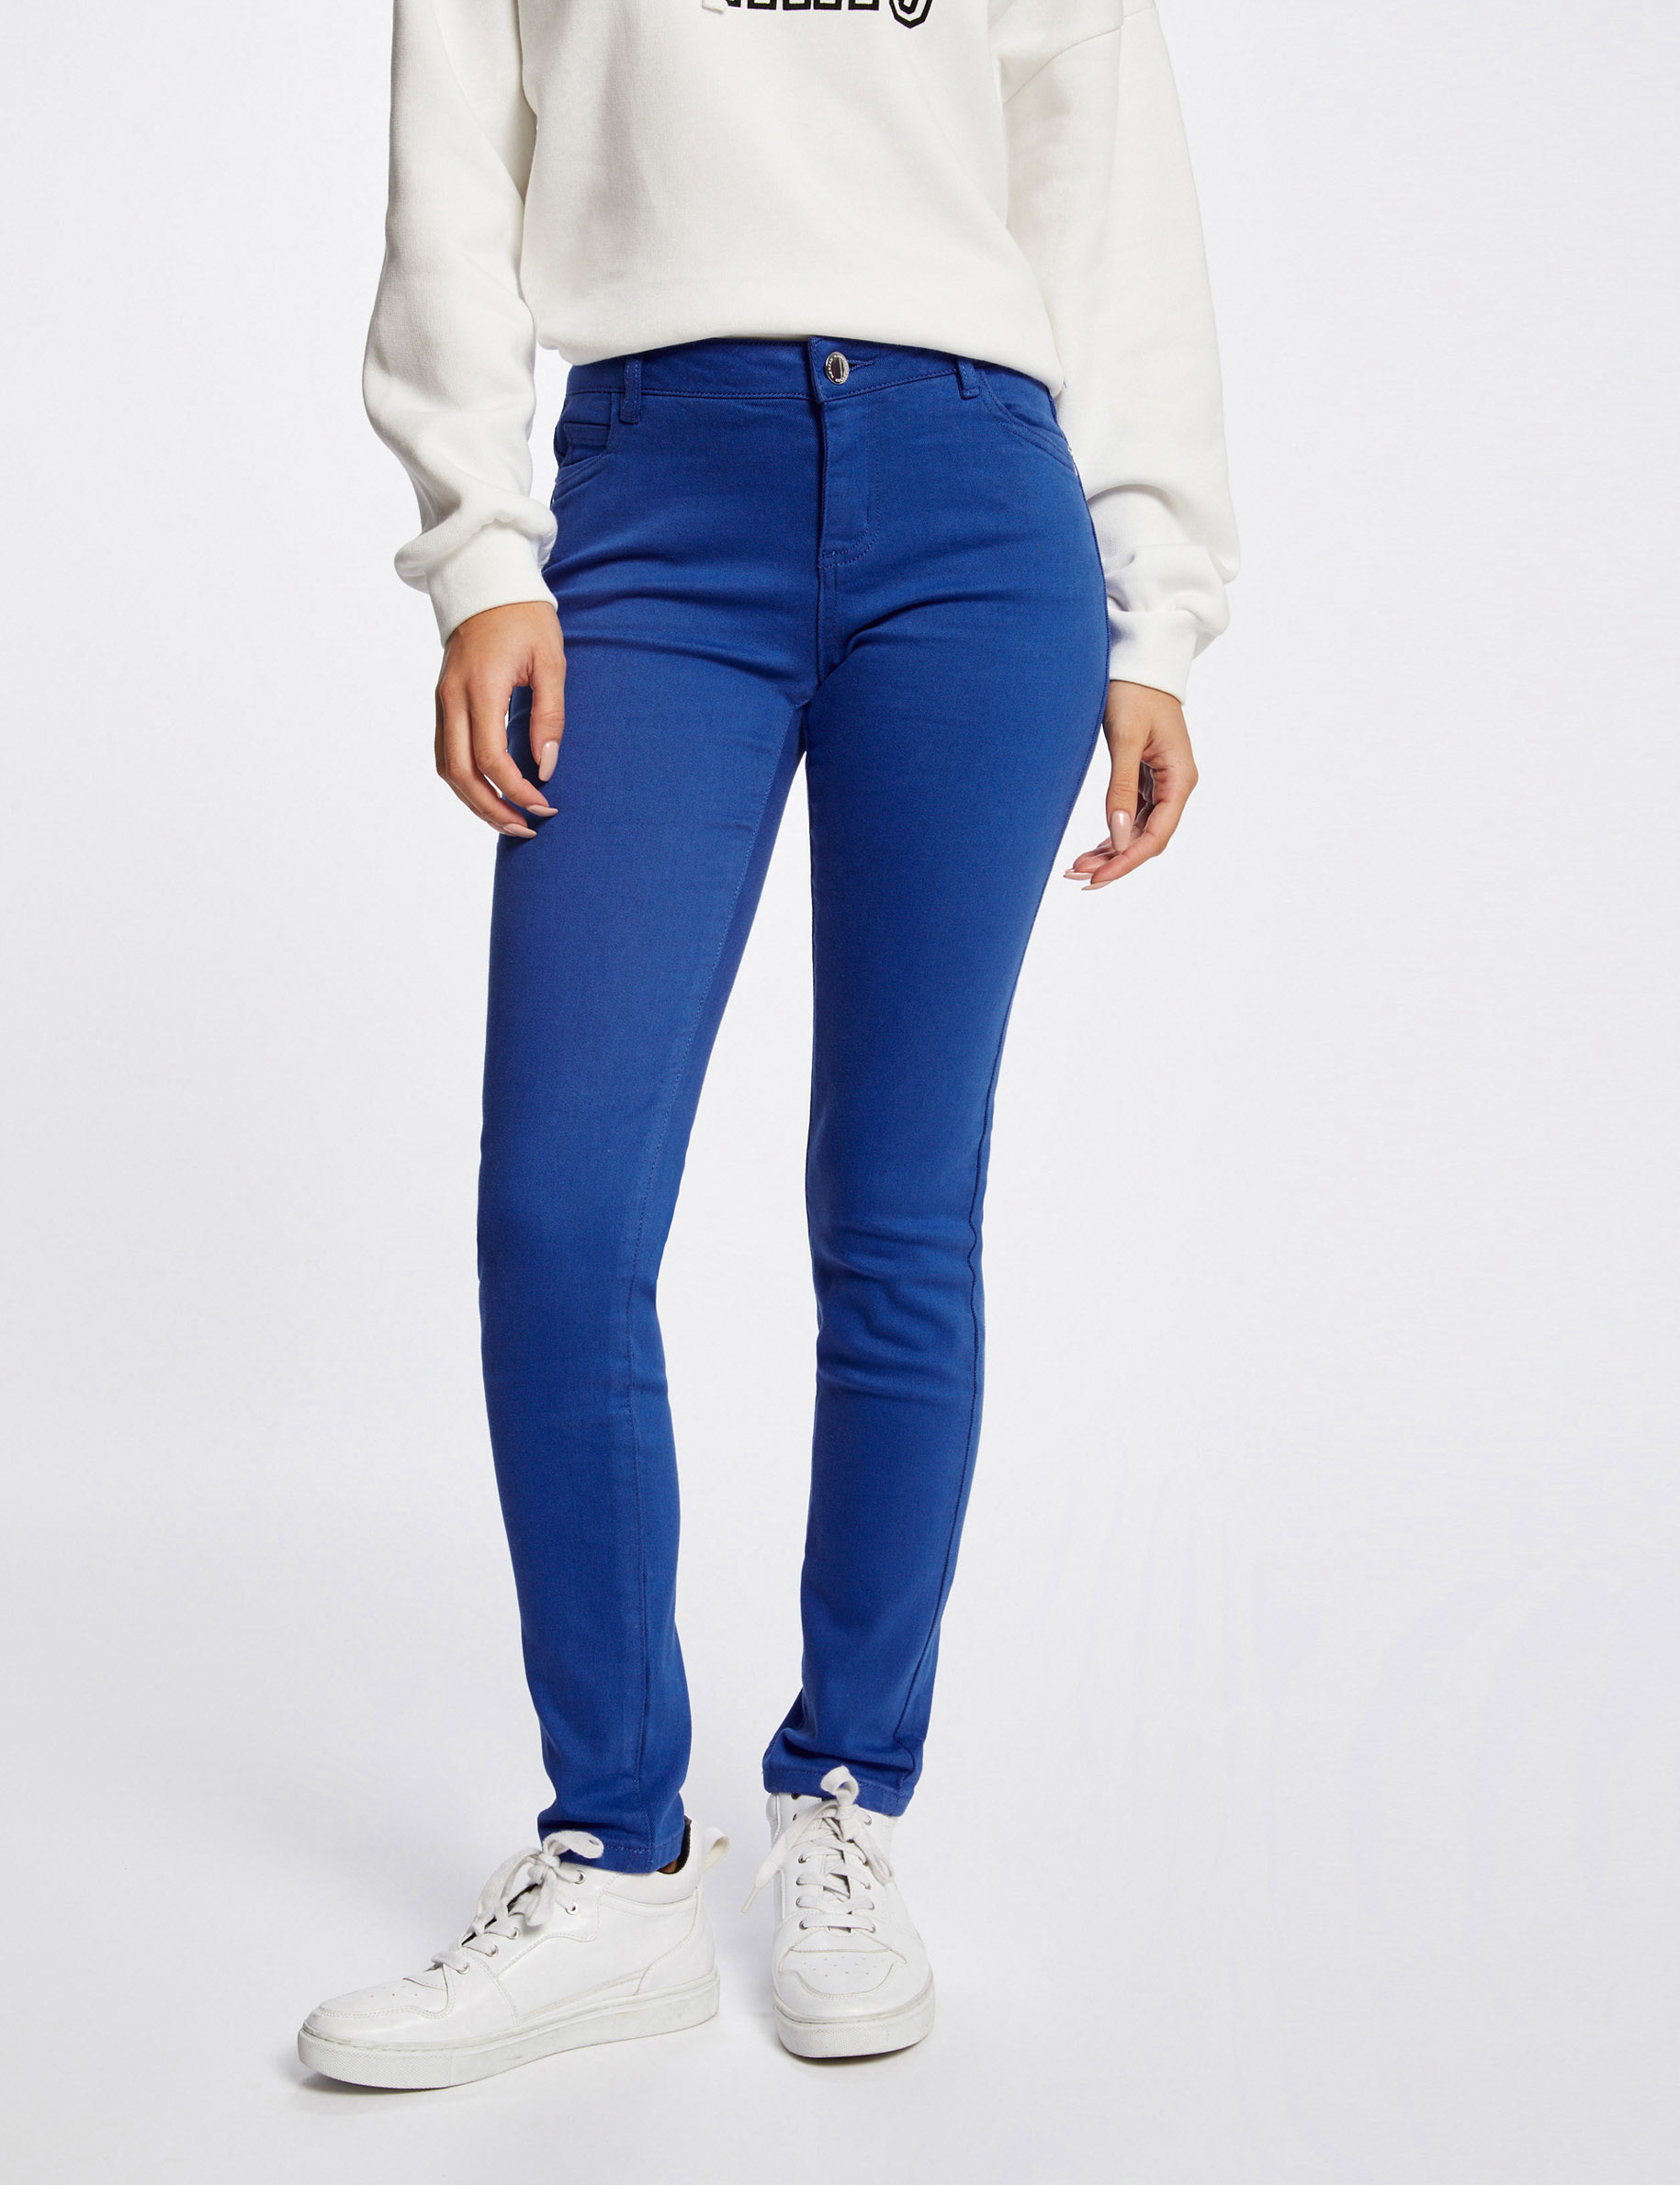 Skinny broek met lage taille blauw medium vrouw